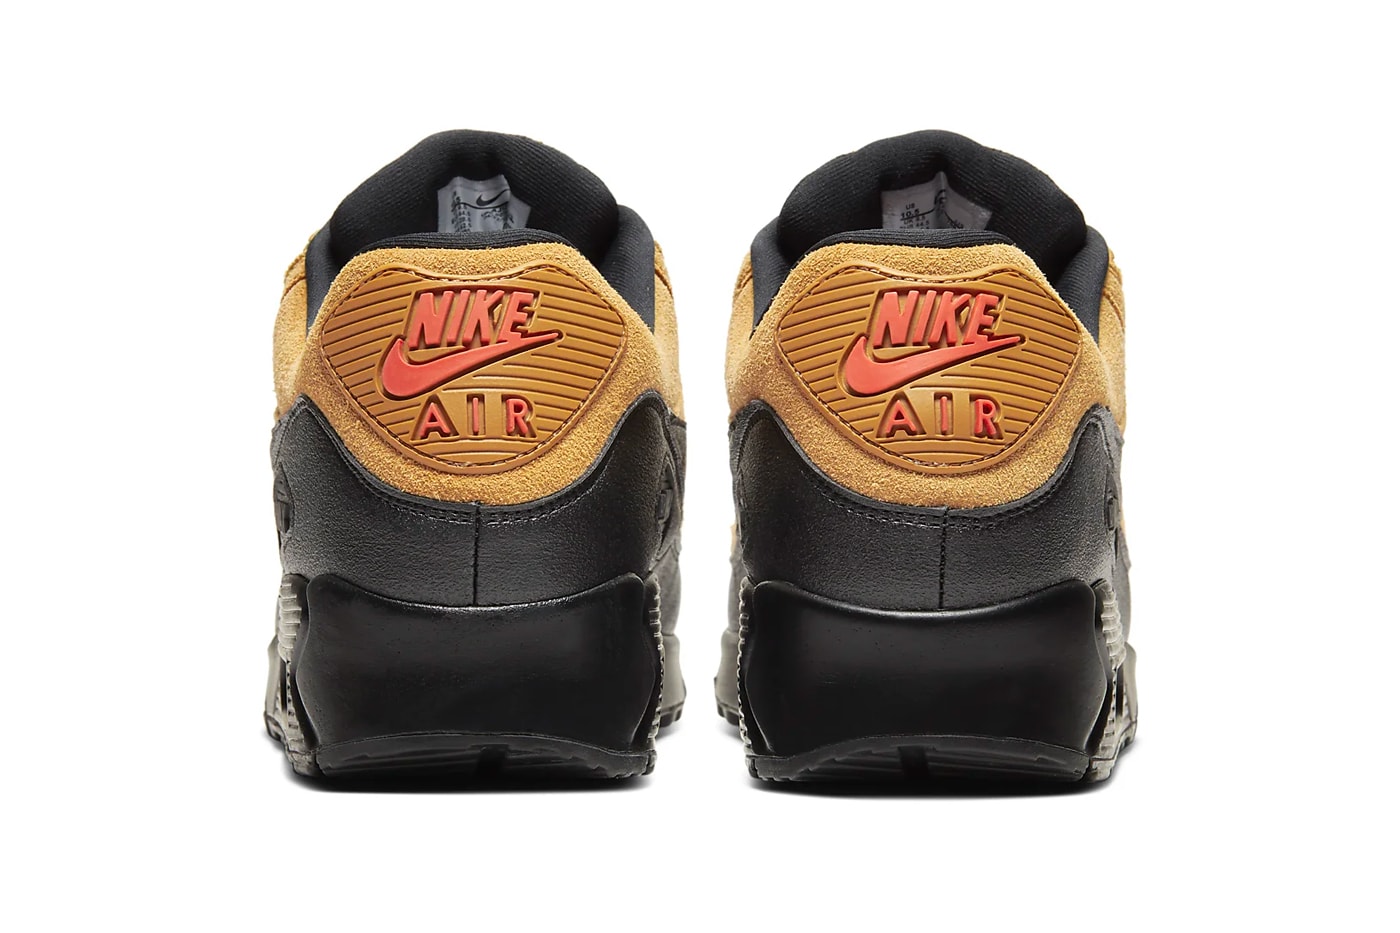 Nike Air Force 1 Wheat Black Midnight navy BQ4326 700 Air Max 90 Cosmic Clay AJ1285 700 footwear shoes sneakers swoosh brown hazel beige